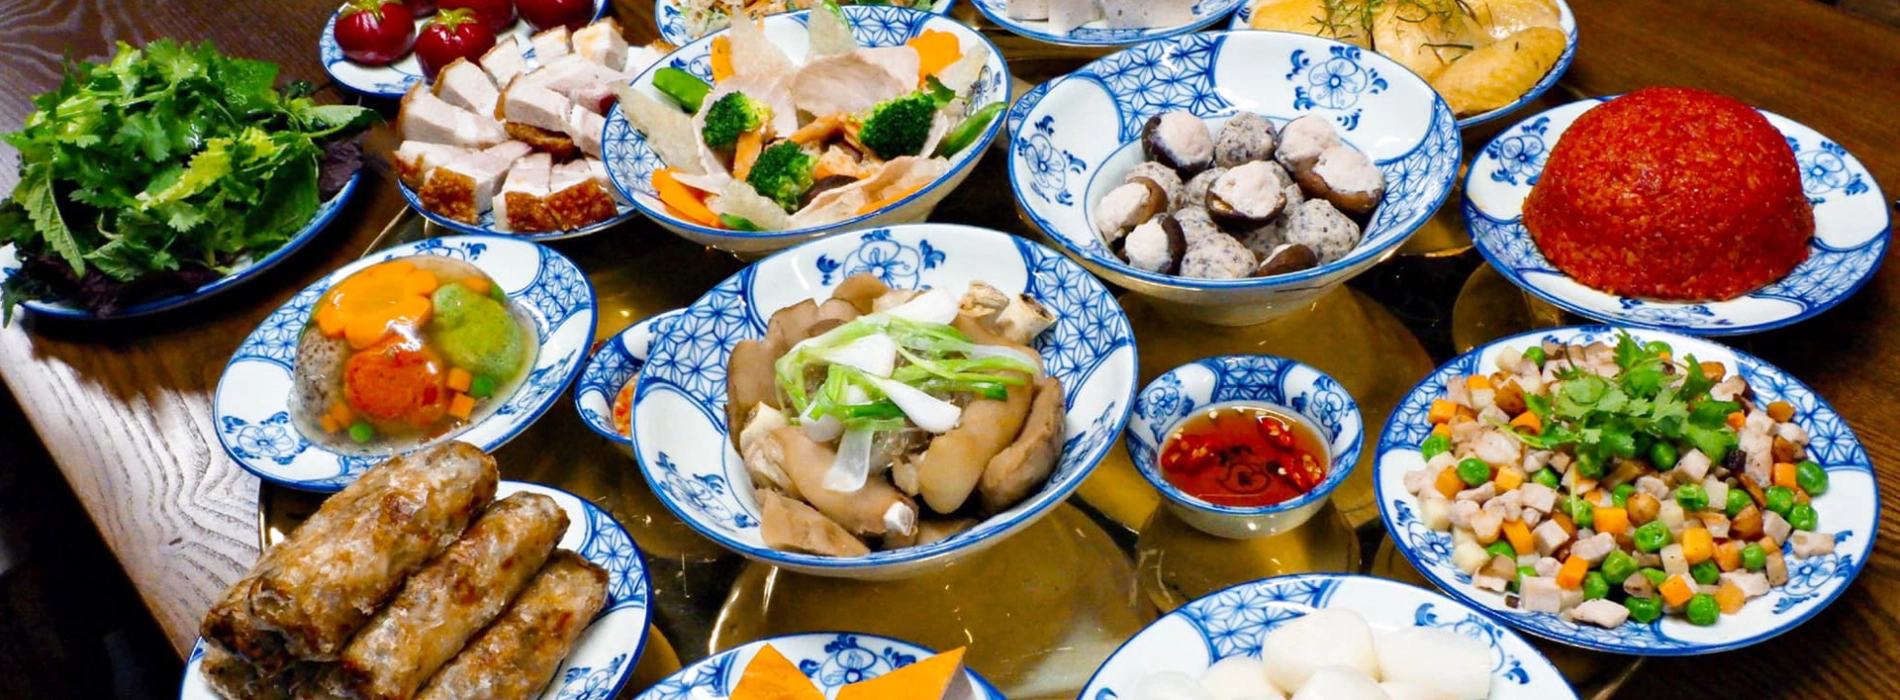 Explore the Food culture of Vietnam, Laos, Thailand, and Cambodia